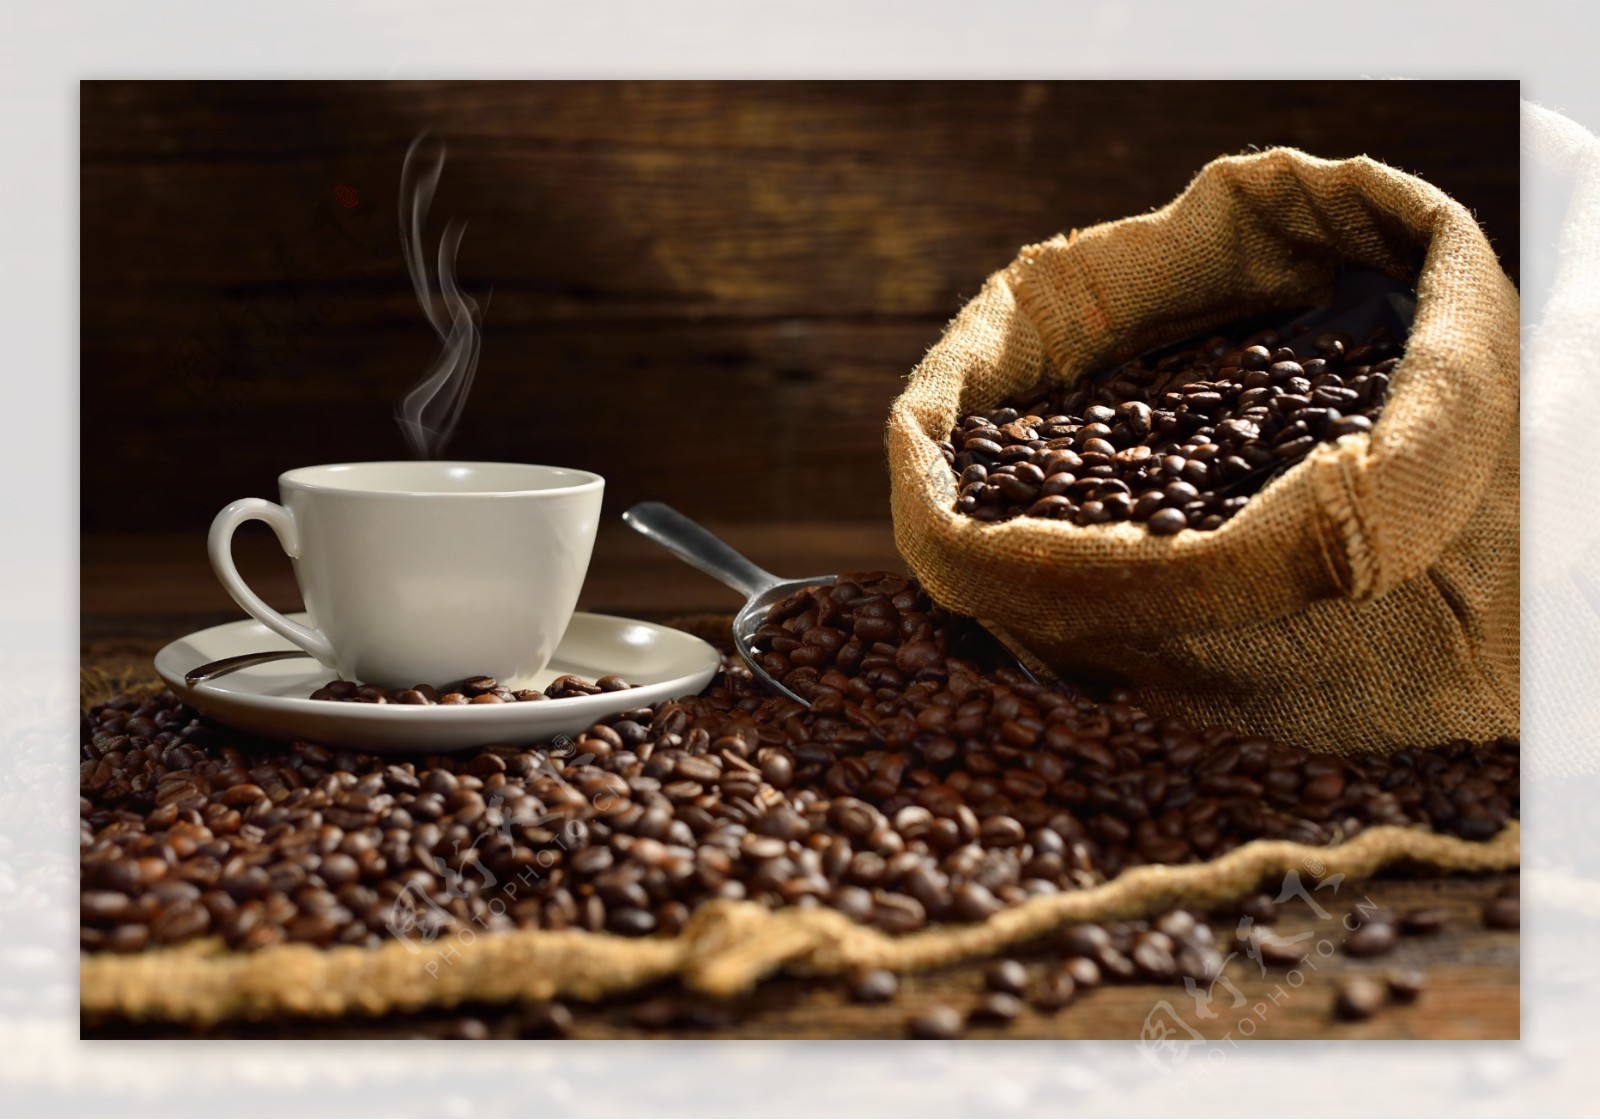 热腾腾的咖啡与咖啡豆图片